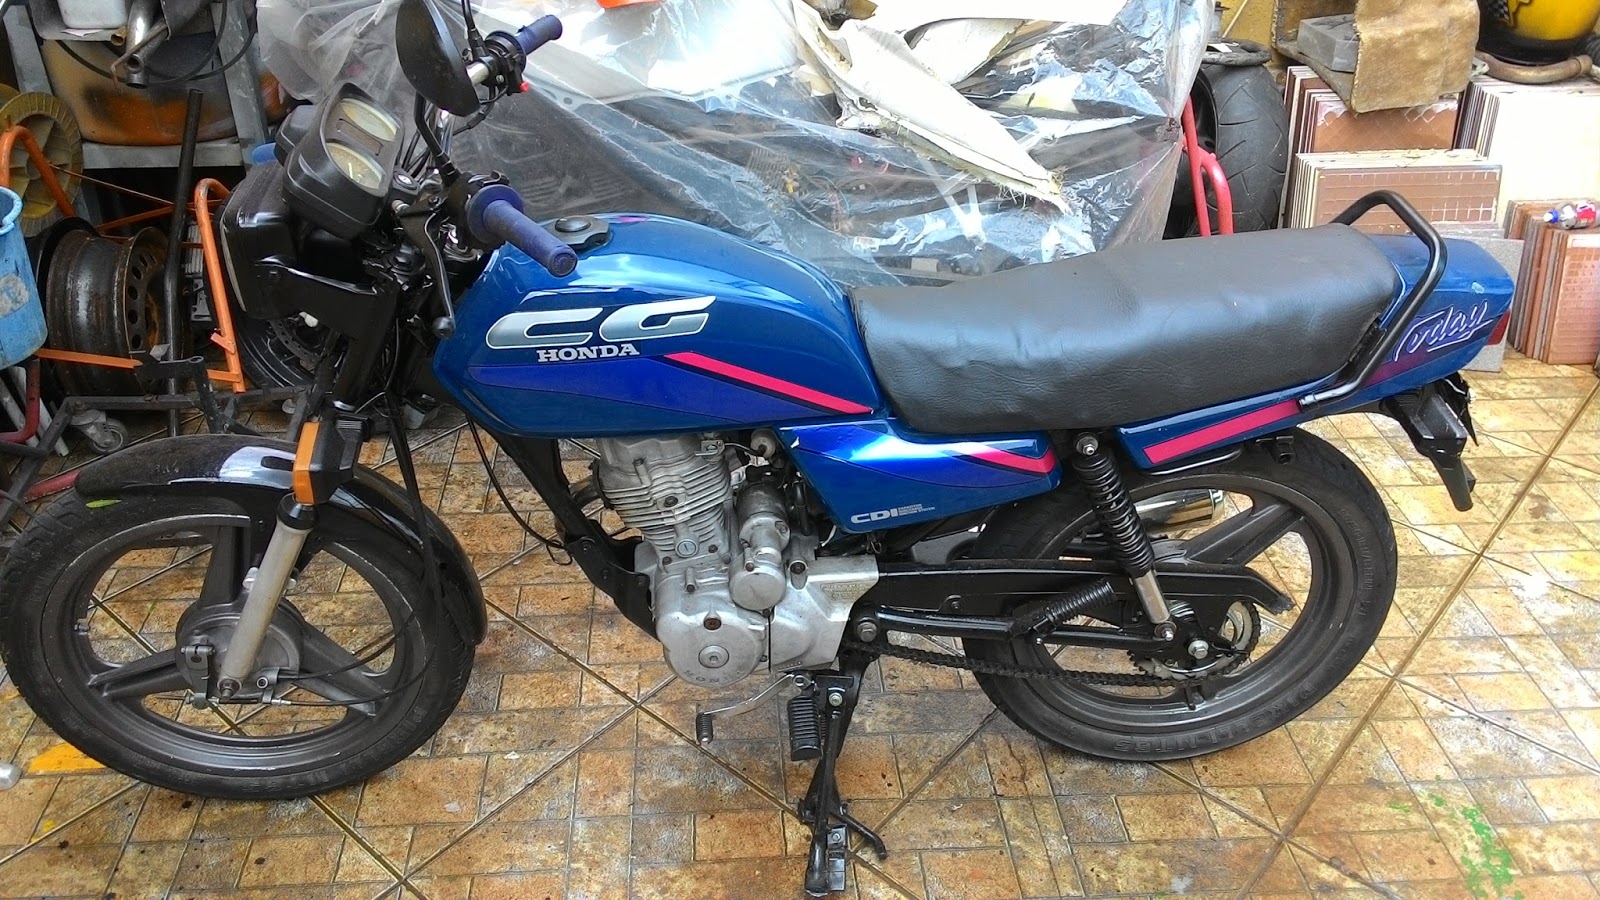  Cafe  racer  CG 125  cc 89 today moto a venda 